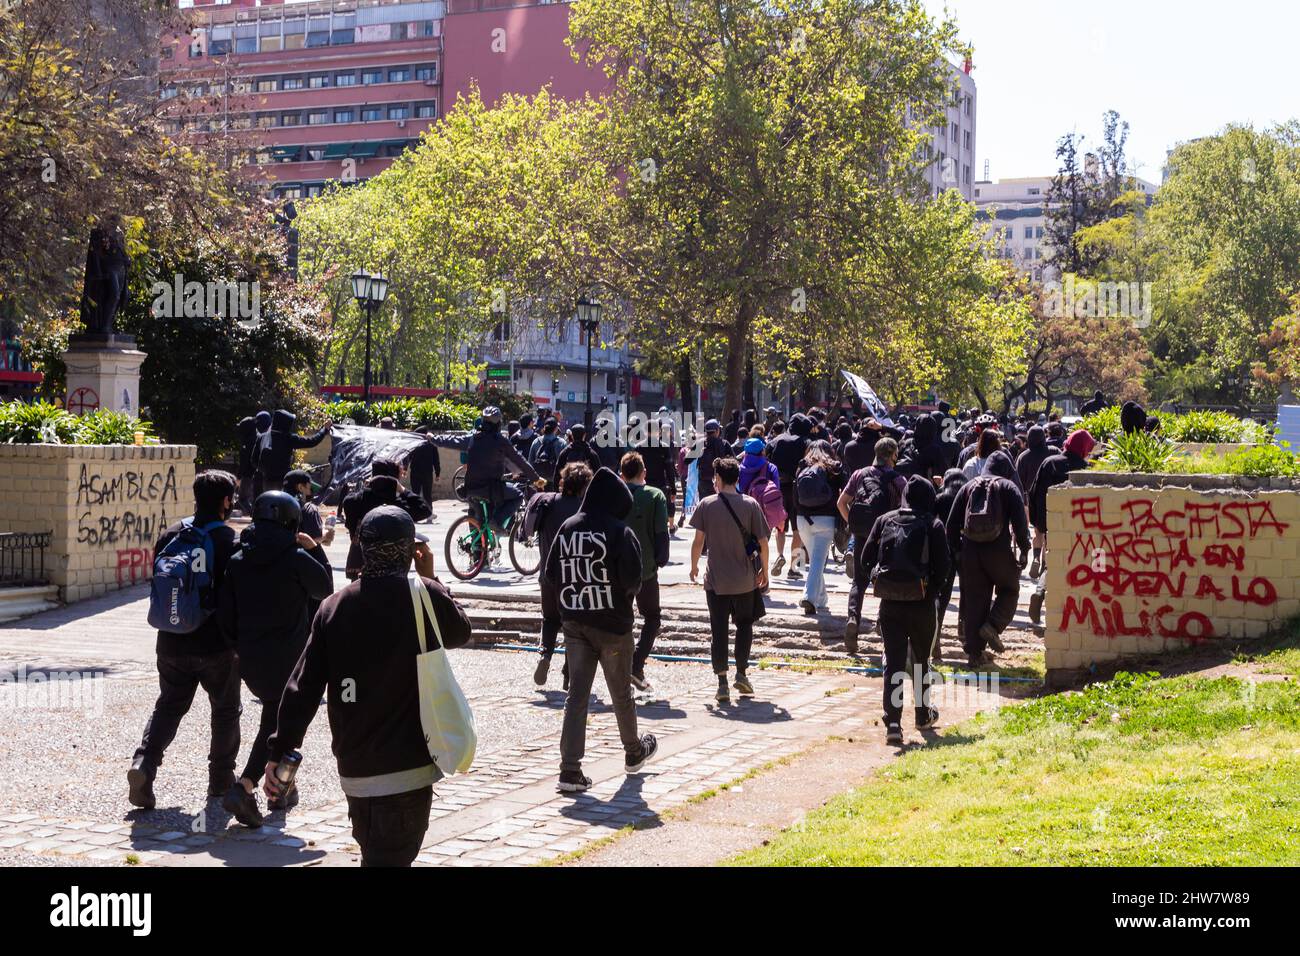 Santiago, Cile - 2 ottobre 2021: Pro immigrazione marciare in una strada importante Foto Stock